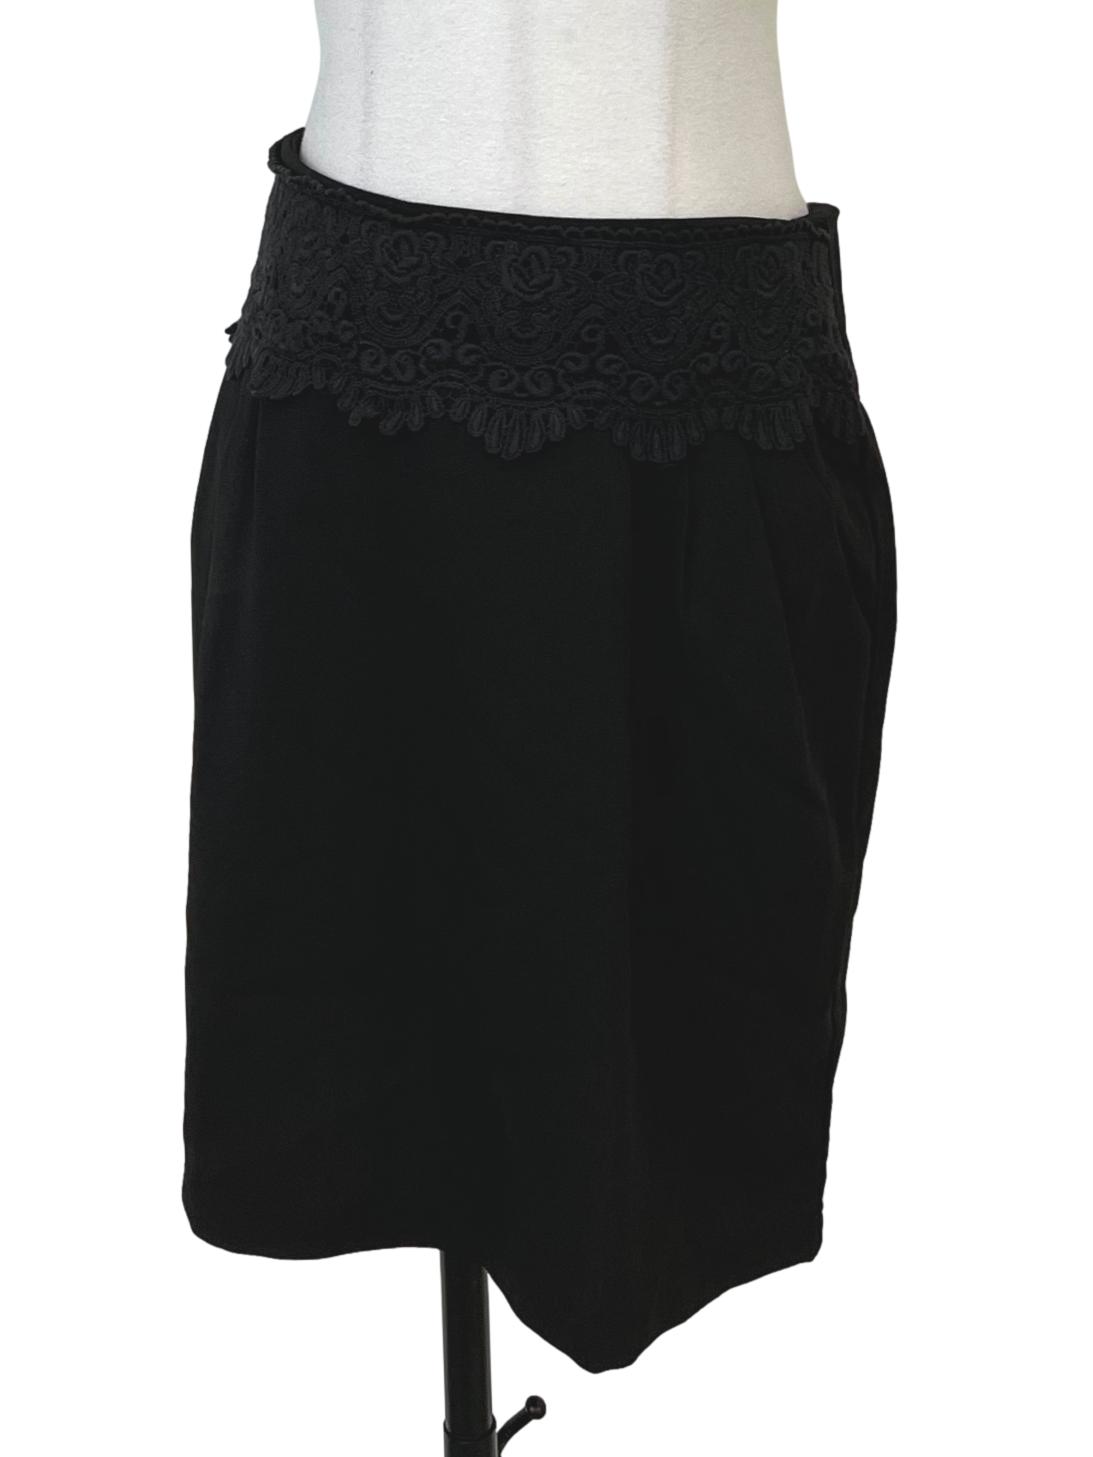 Soot Black Tube Skirt